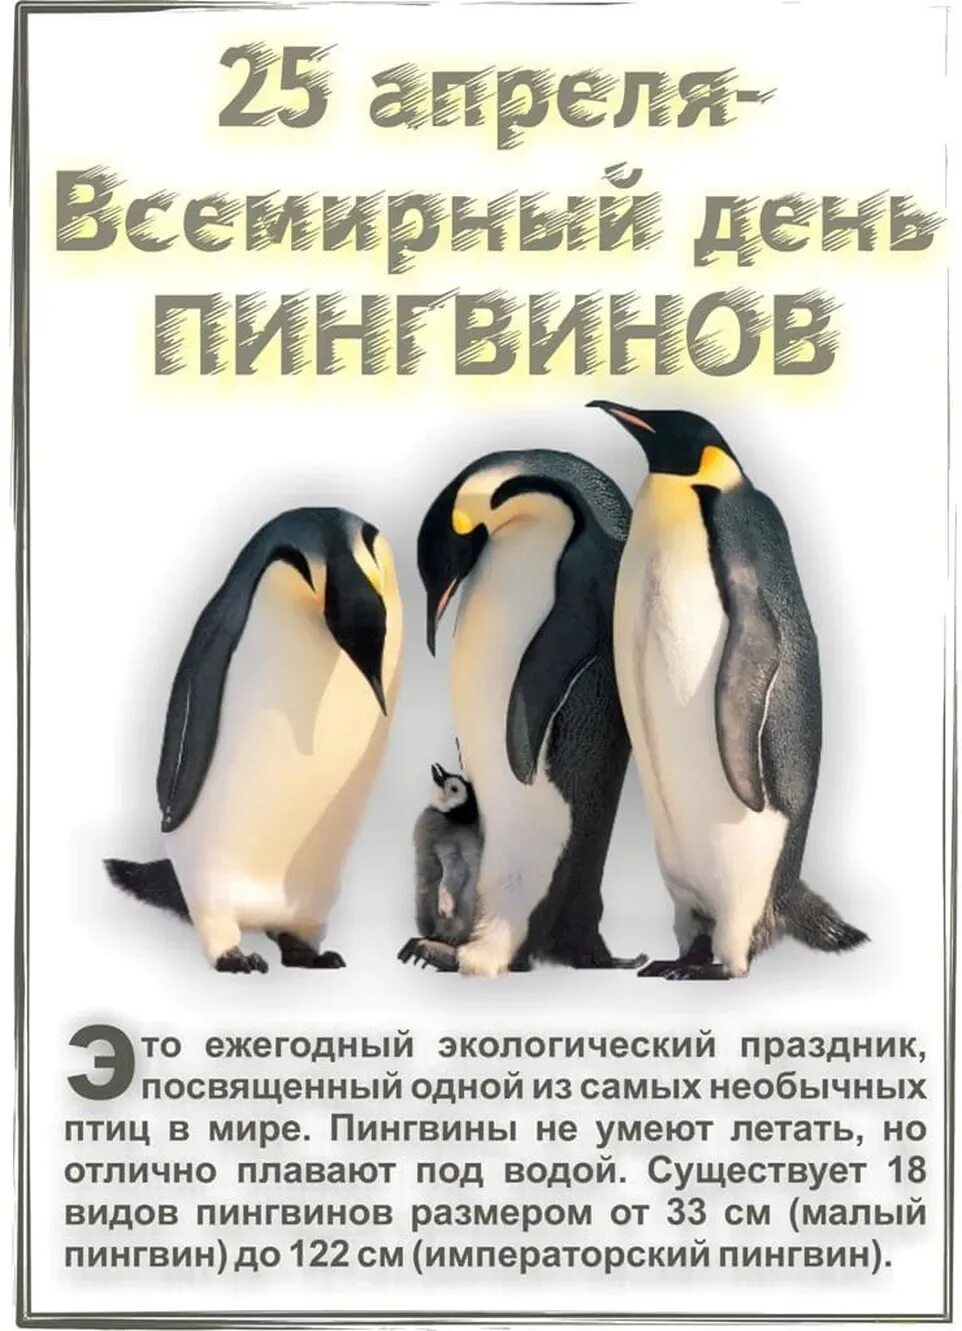 Всемирный день пингвинов 25 апреля. Всемныйдень пингвинов. Всемирныйсдень пингвинов. Открытка с днем пингвина. 25 апреля какой праздник в россии